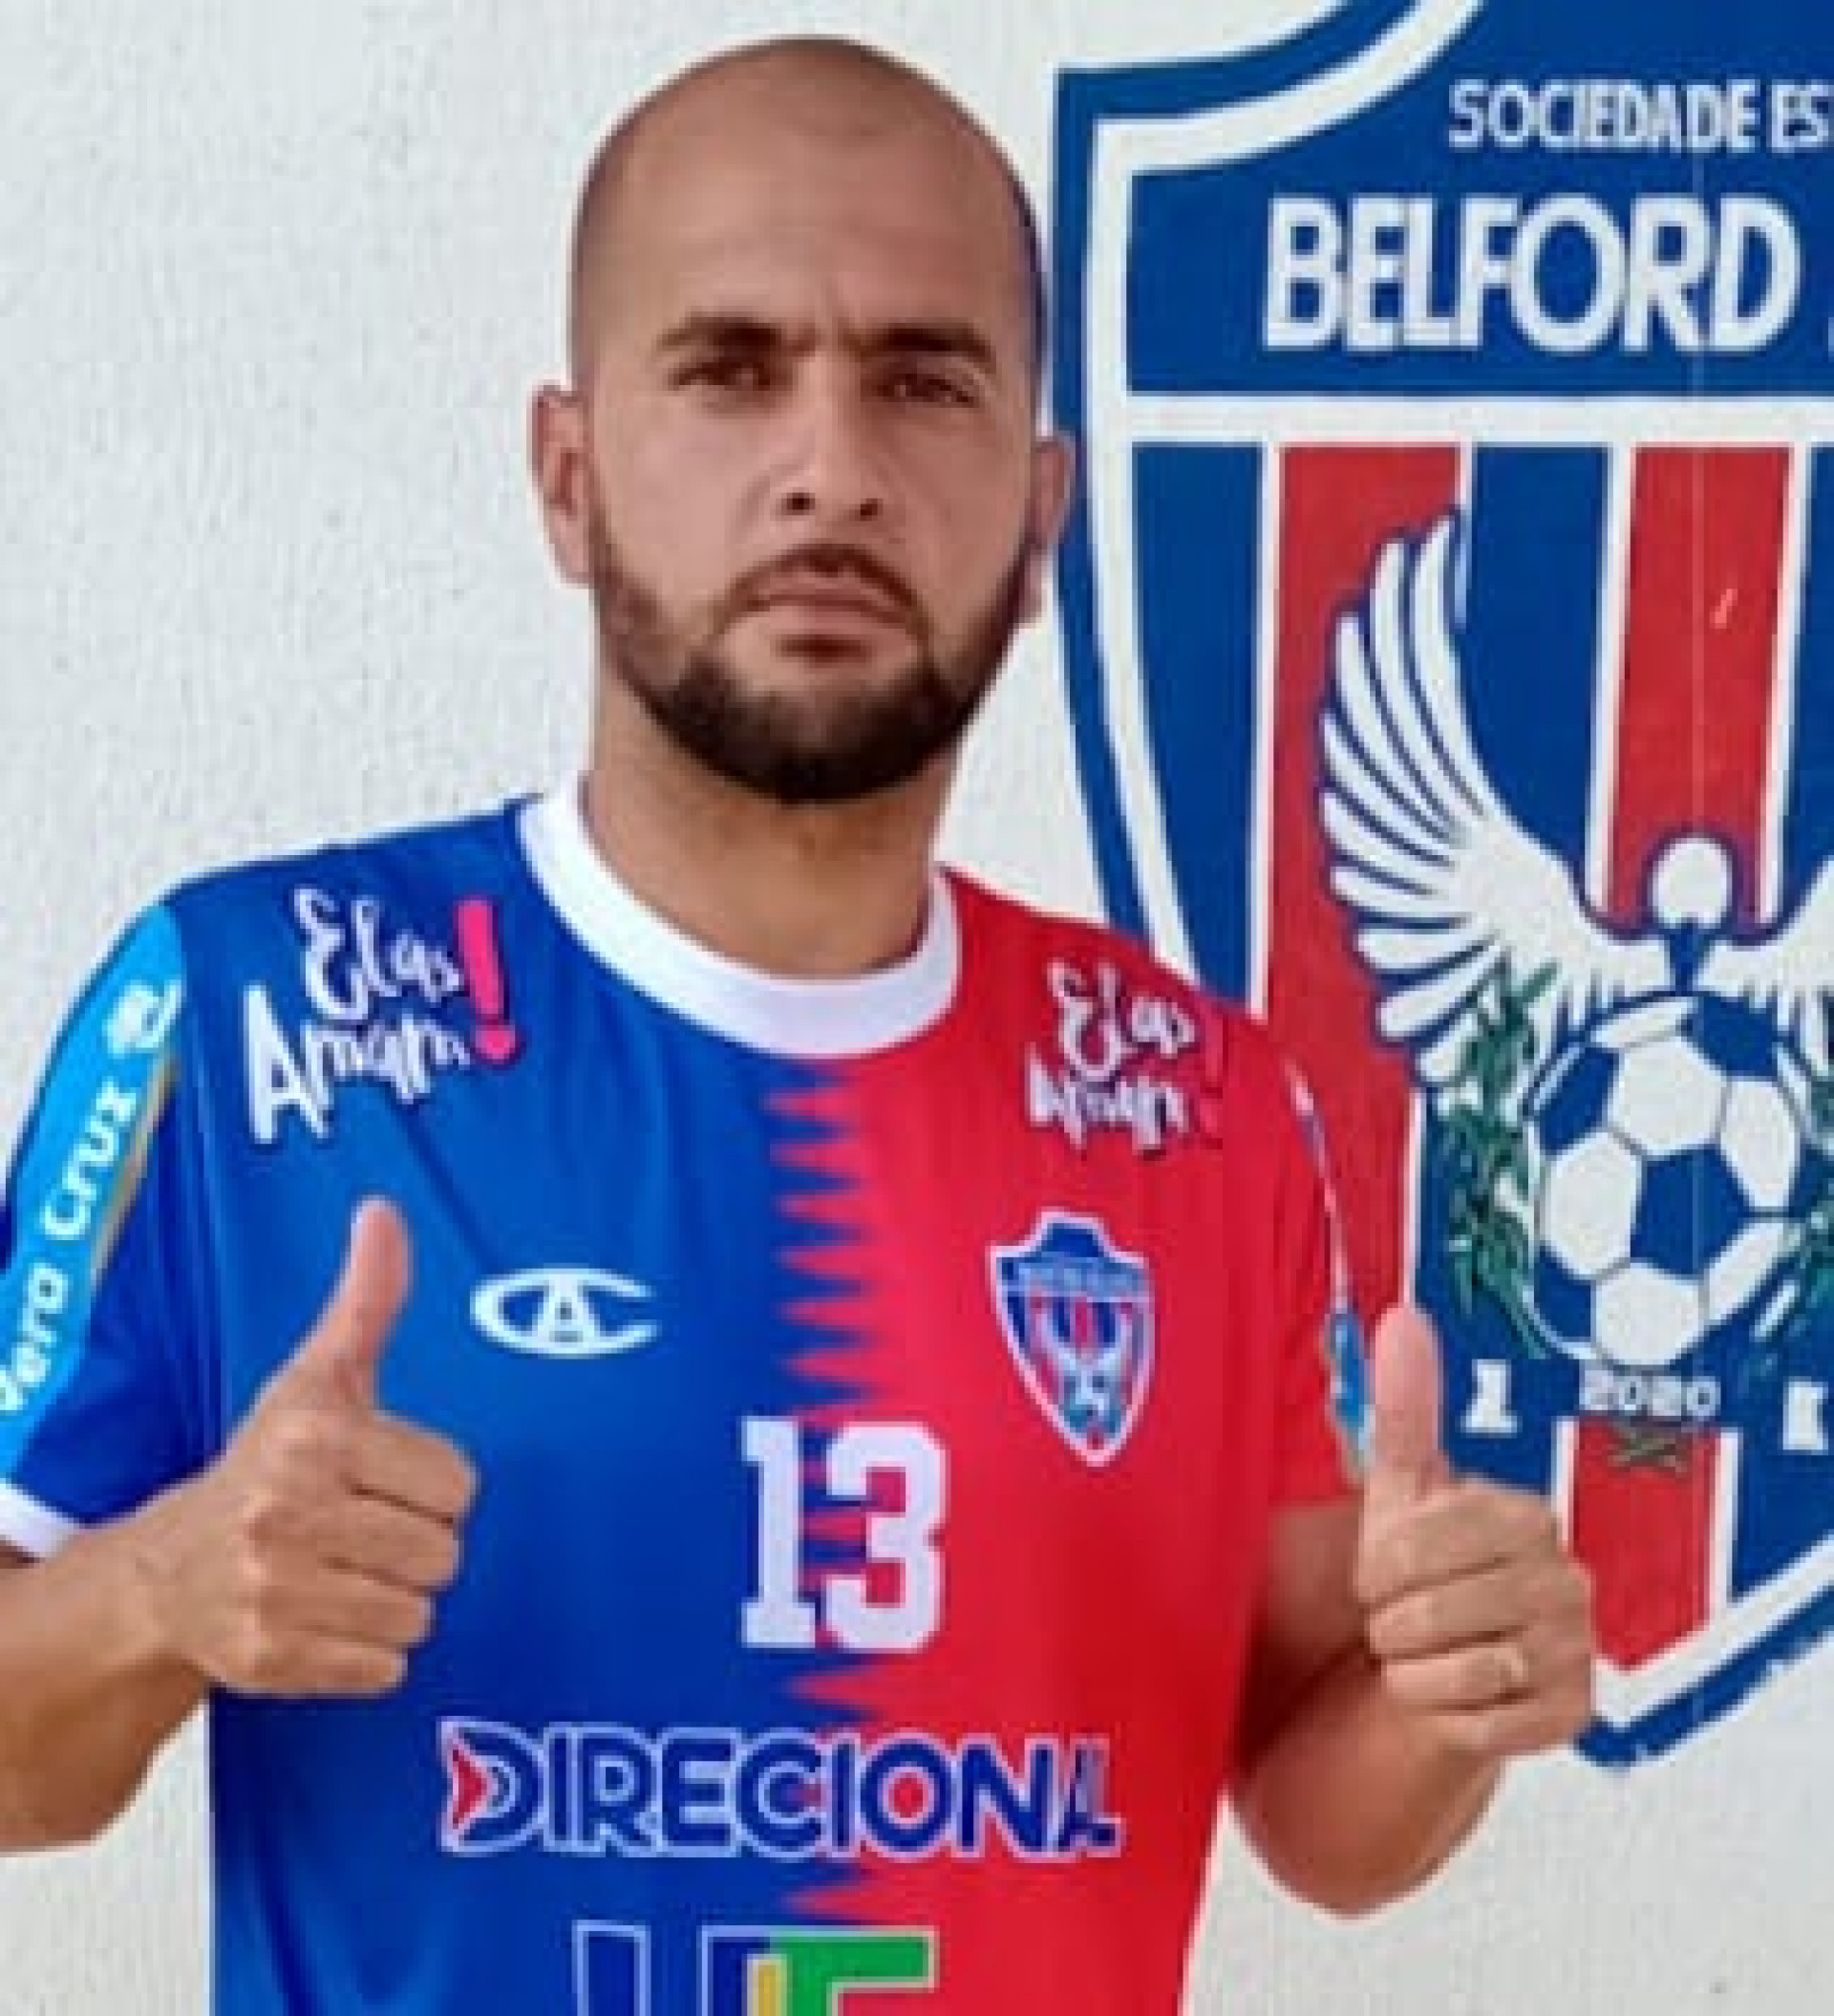 Thiaguinho com a camisa do novo clube belforroxense - Edson VHL / SEBR